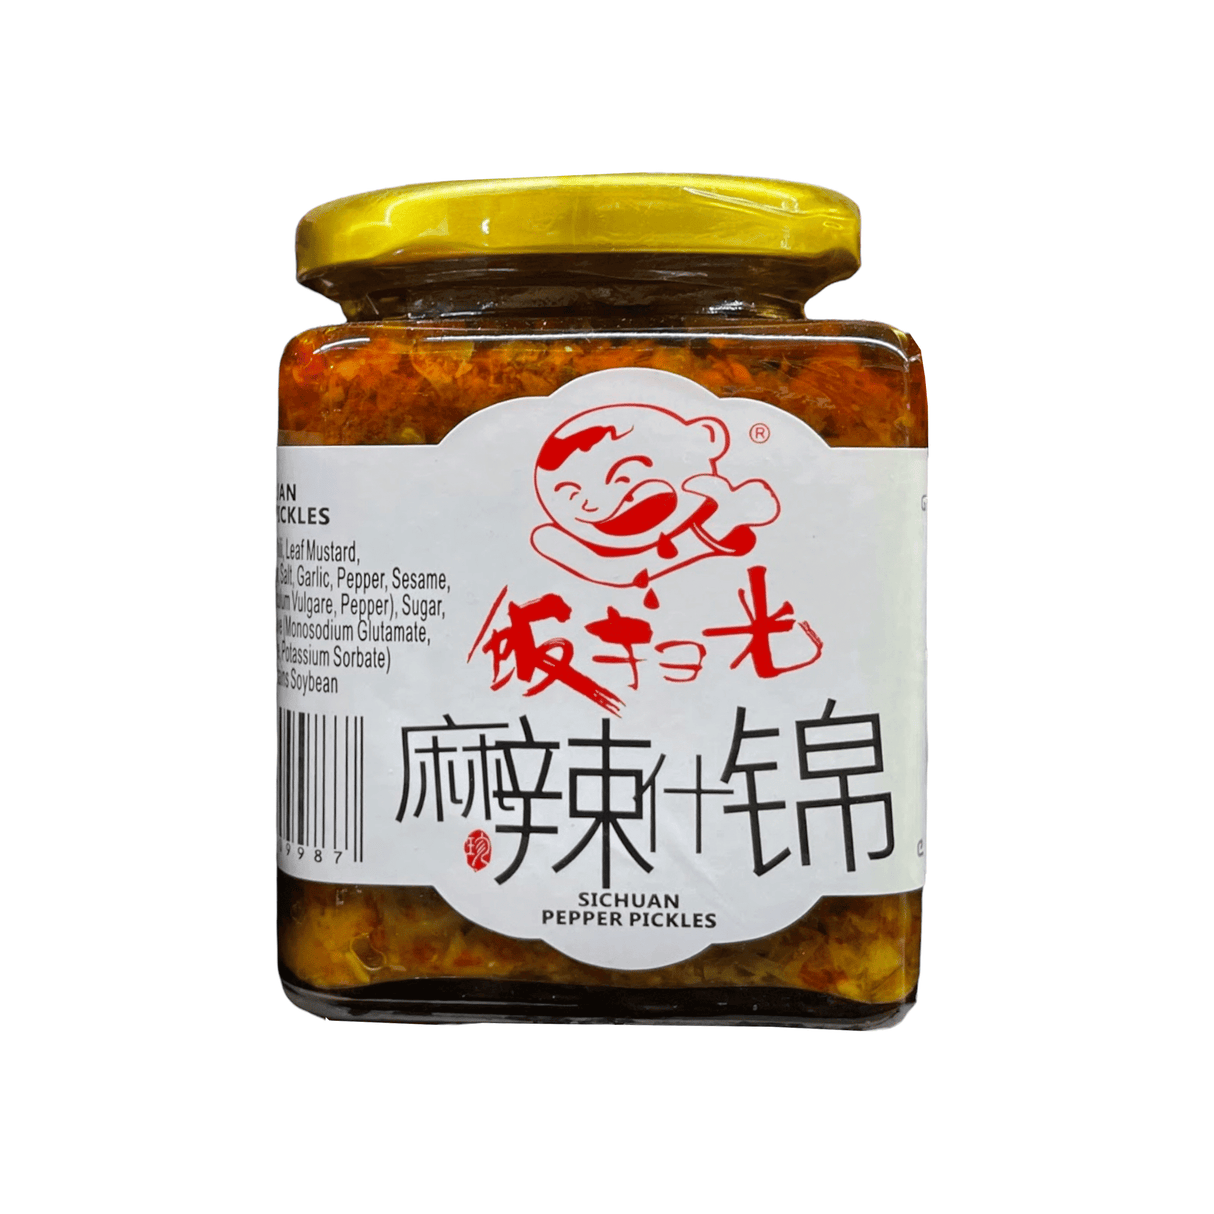 Sichuan Pepper Pickled